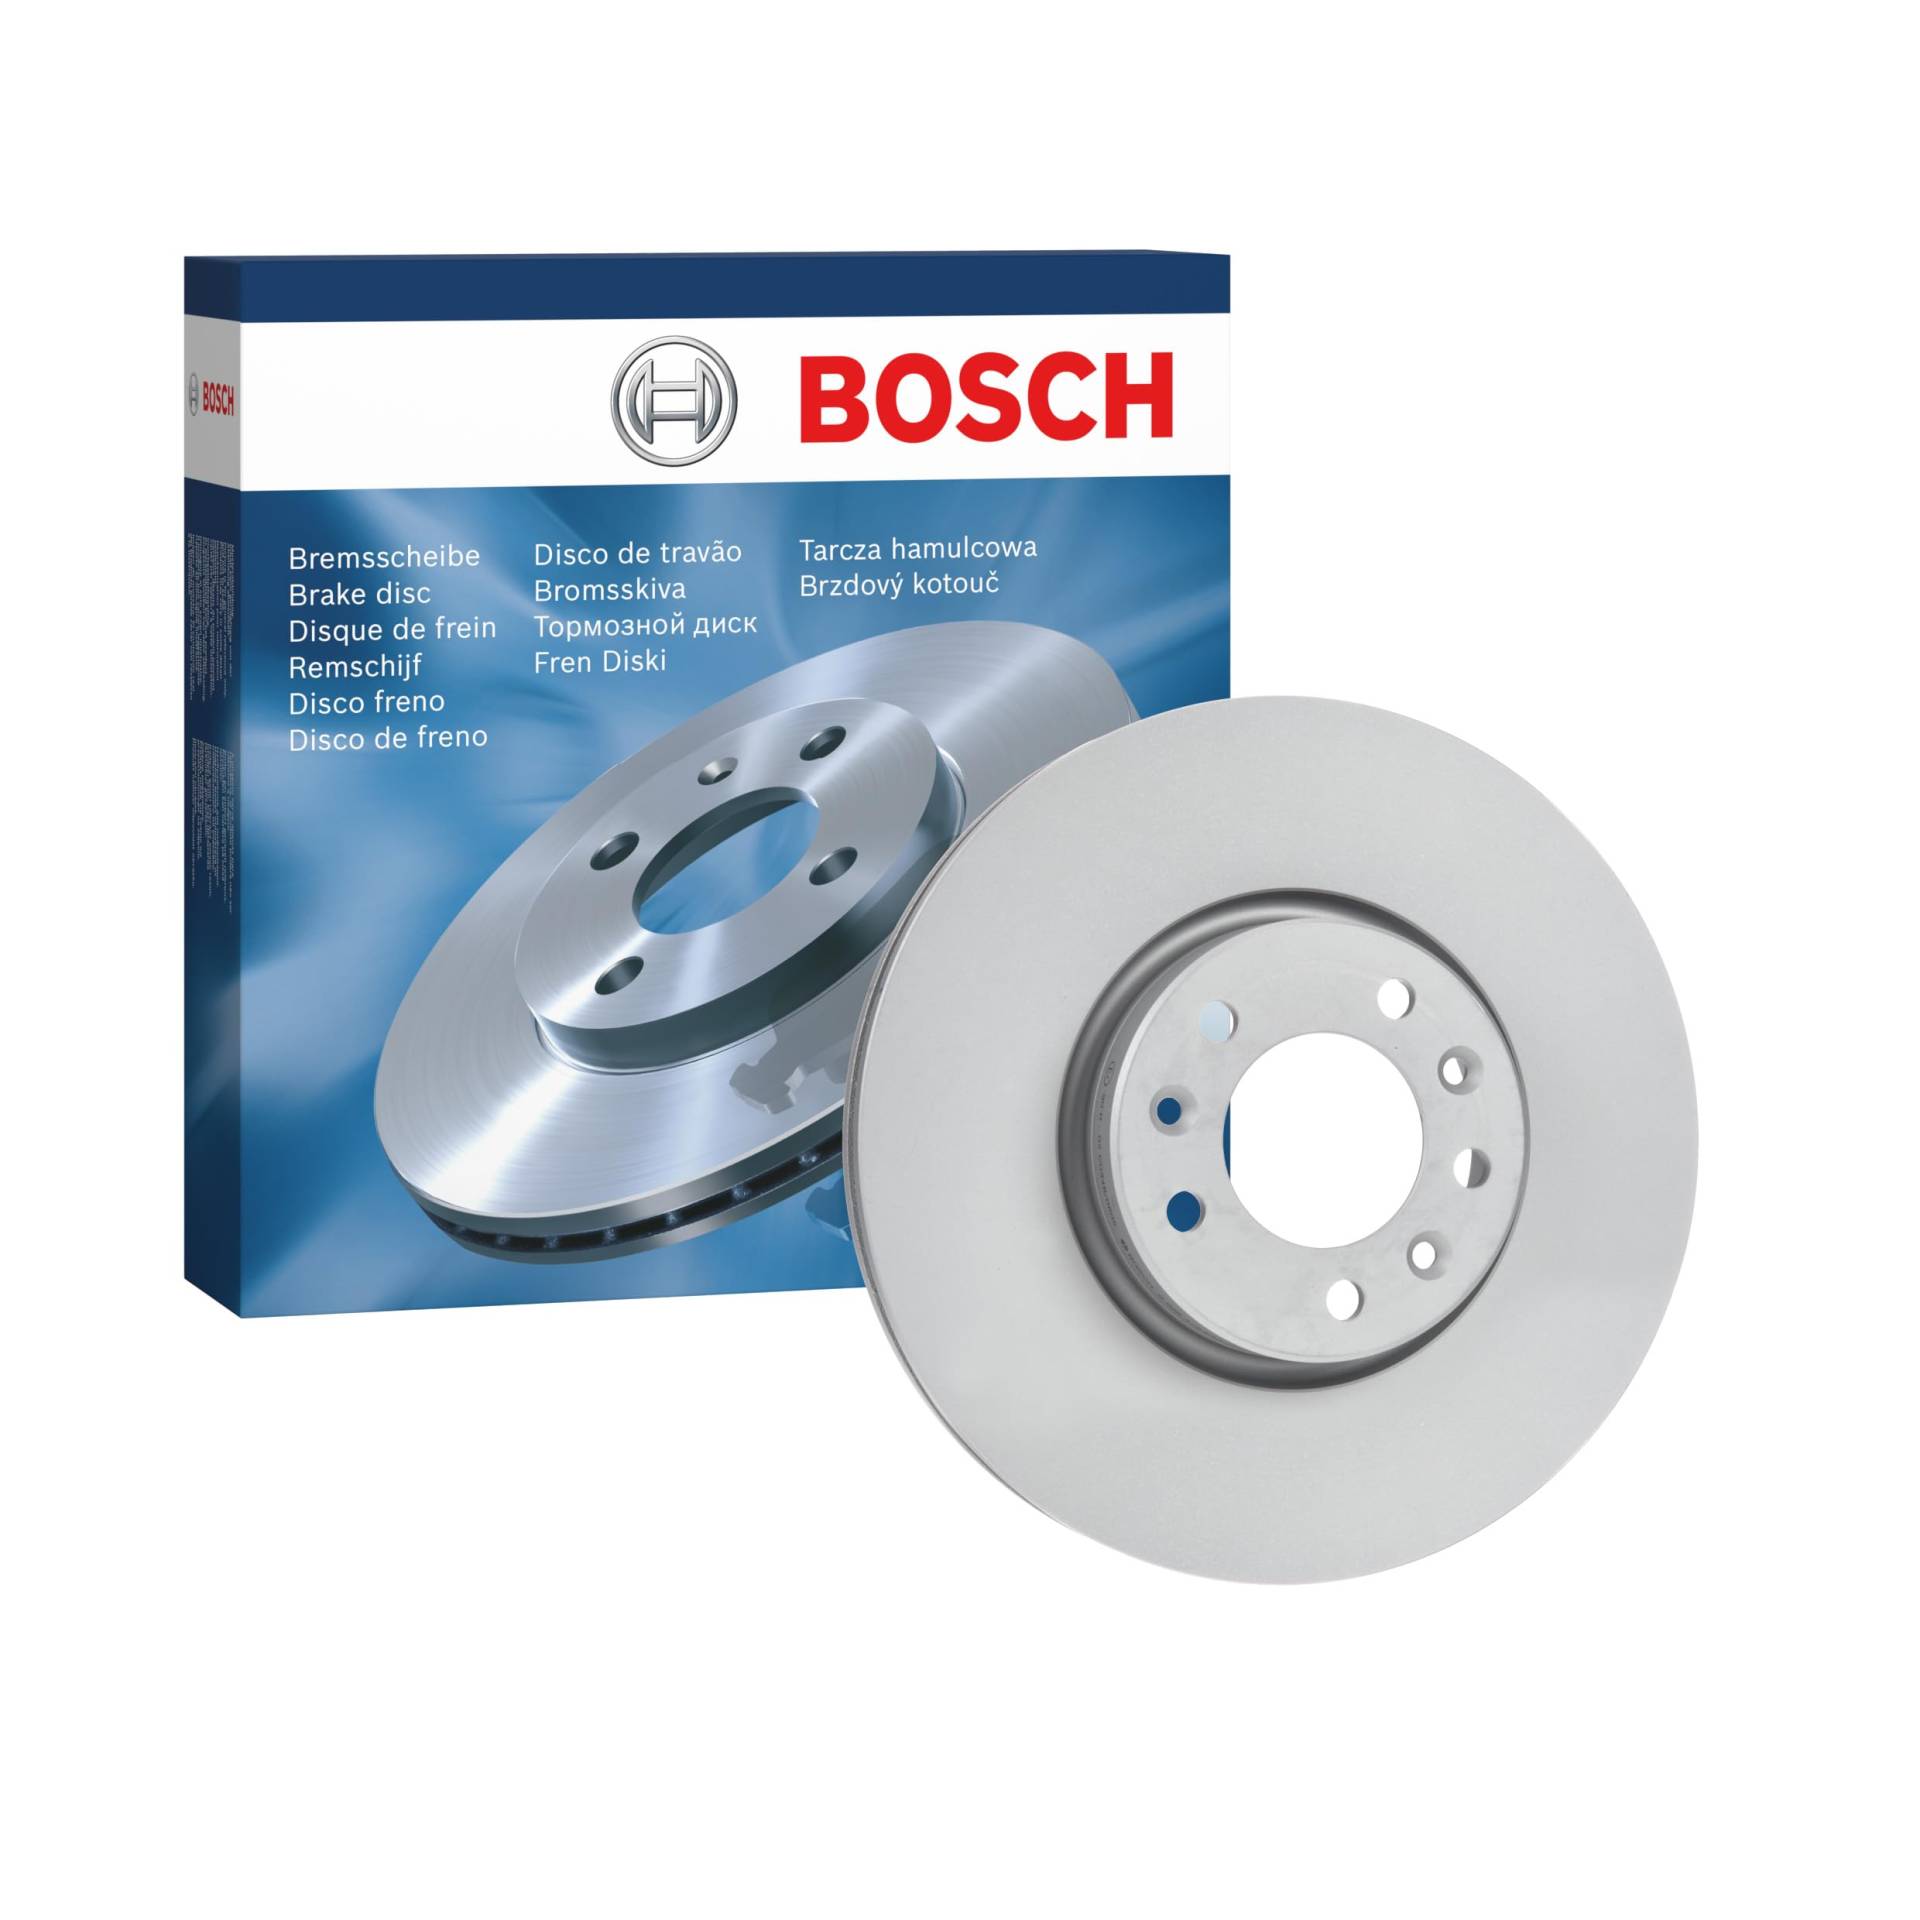 Bosch BD2653 Bremsscheiben - Vorderachse - ECE-R90 Zertifizierung - eine Bremsscheibe von Bosch Automotive